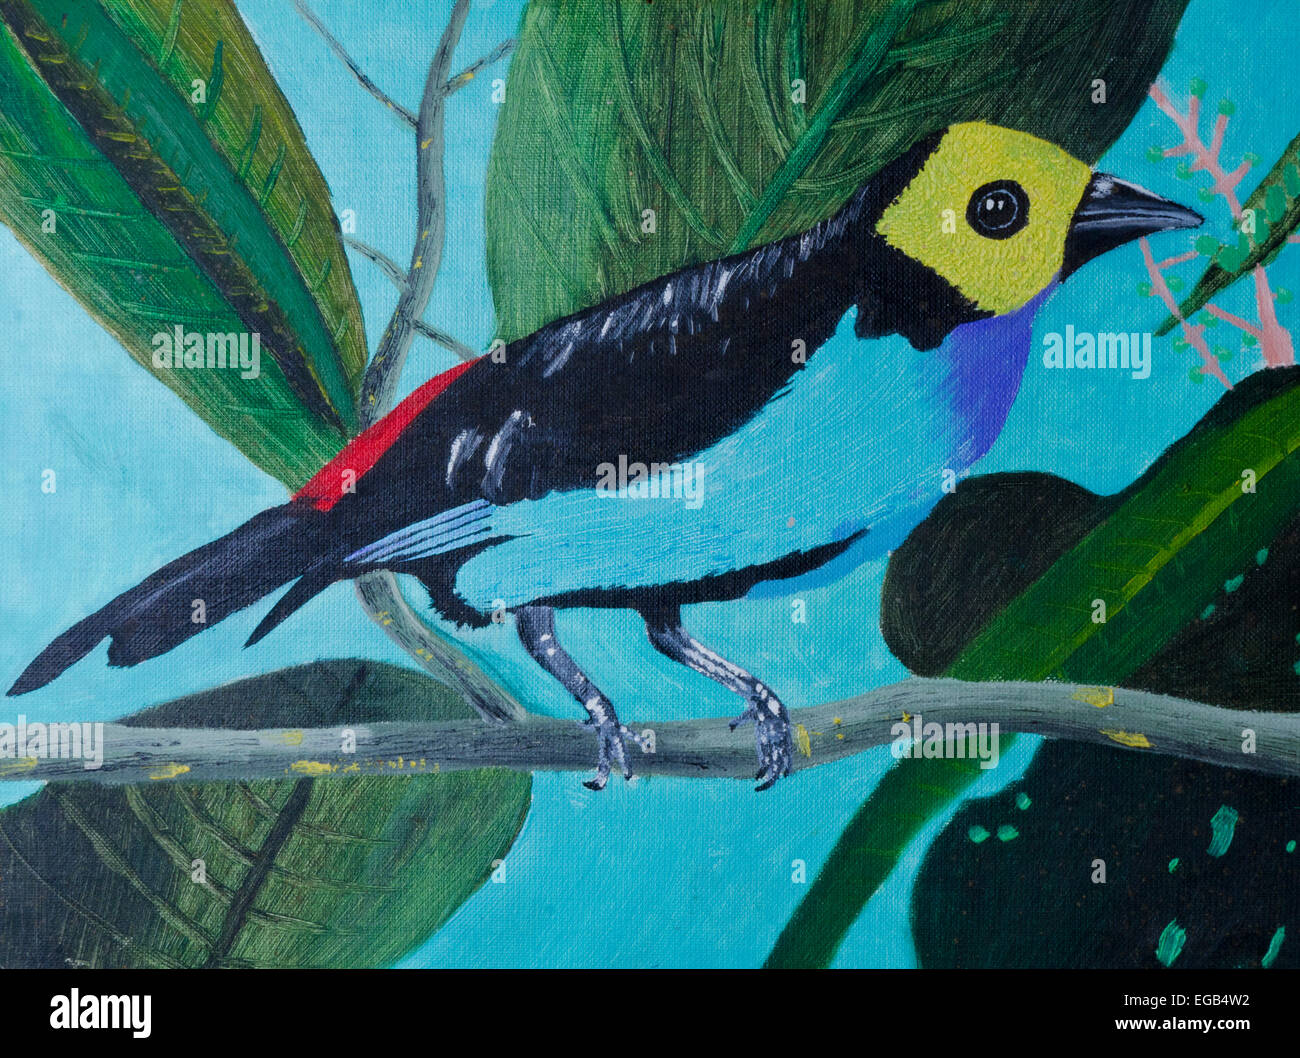 de aves exóticas Fotografía stock Alamy